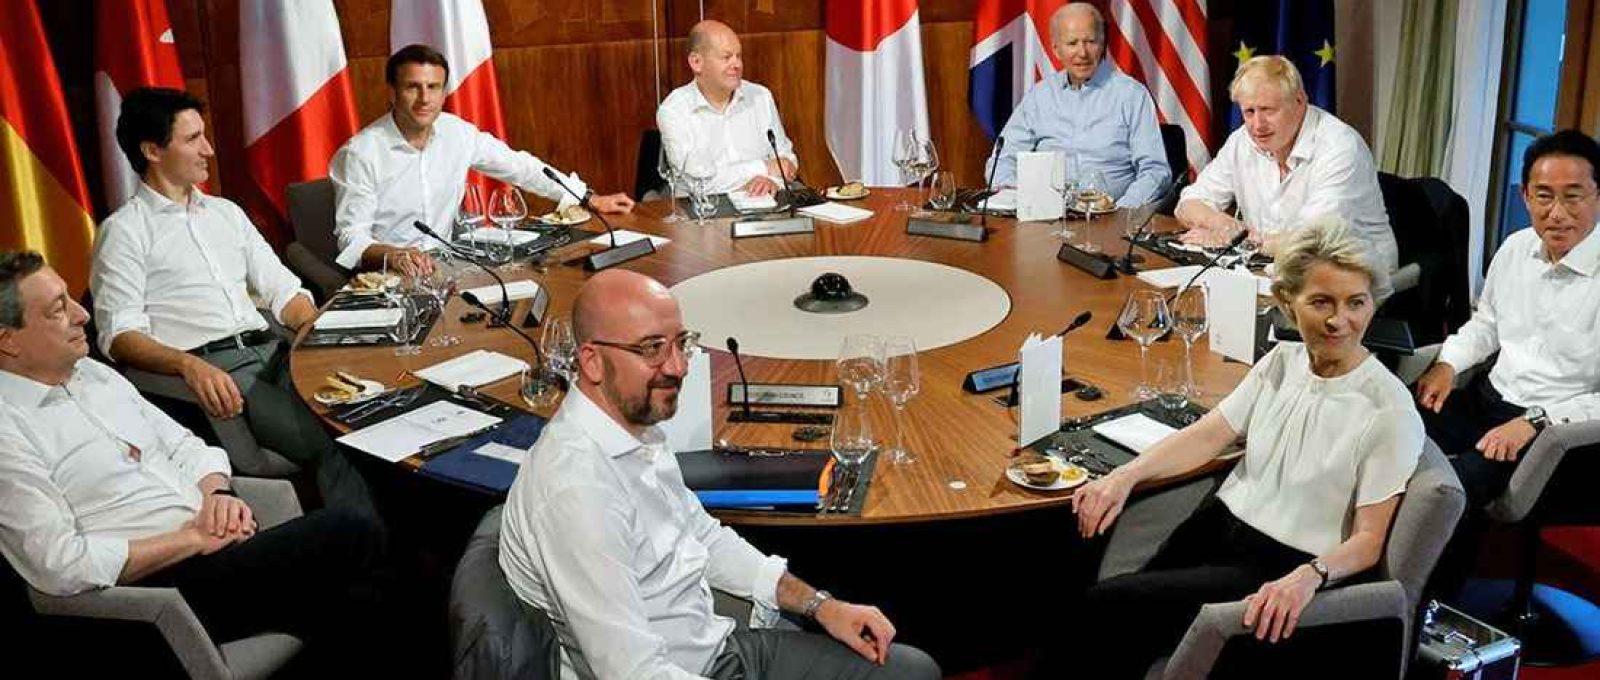 Líderes do G7 posam para foto em reunião de trabalho durante a cúpula da Baviera em junho de 2022, onde a guerra na Ucrânia esteve no topo da agenda (Jonathan Ernst/Reuters).